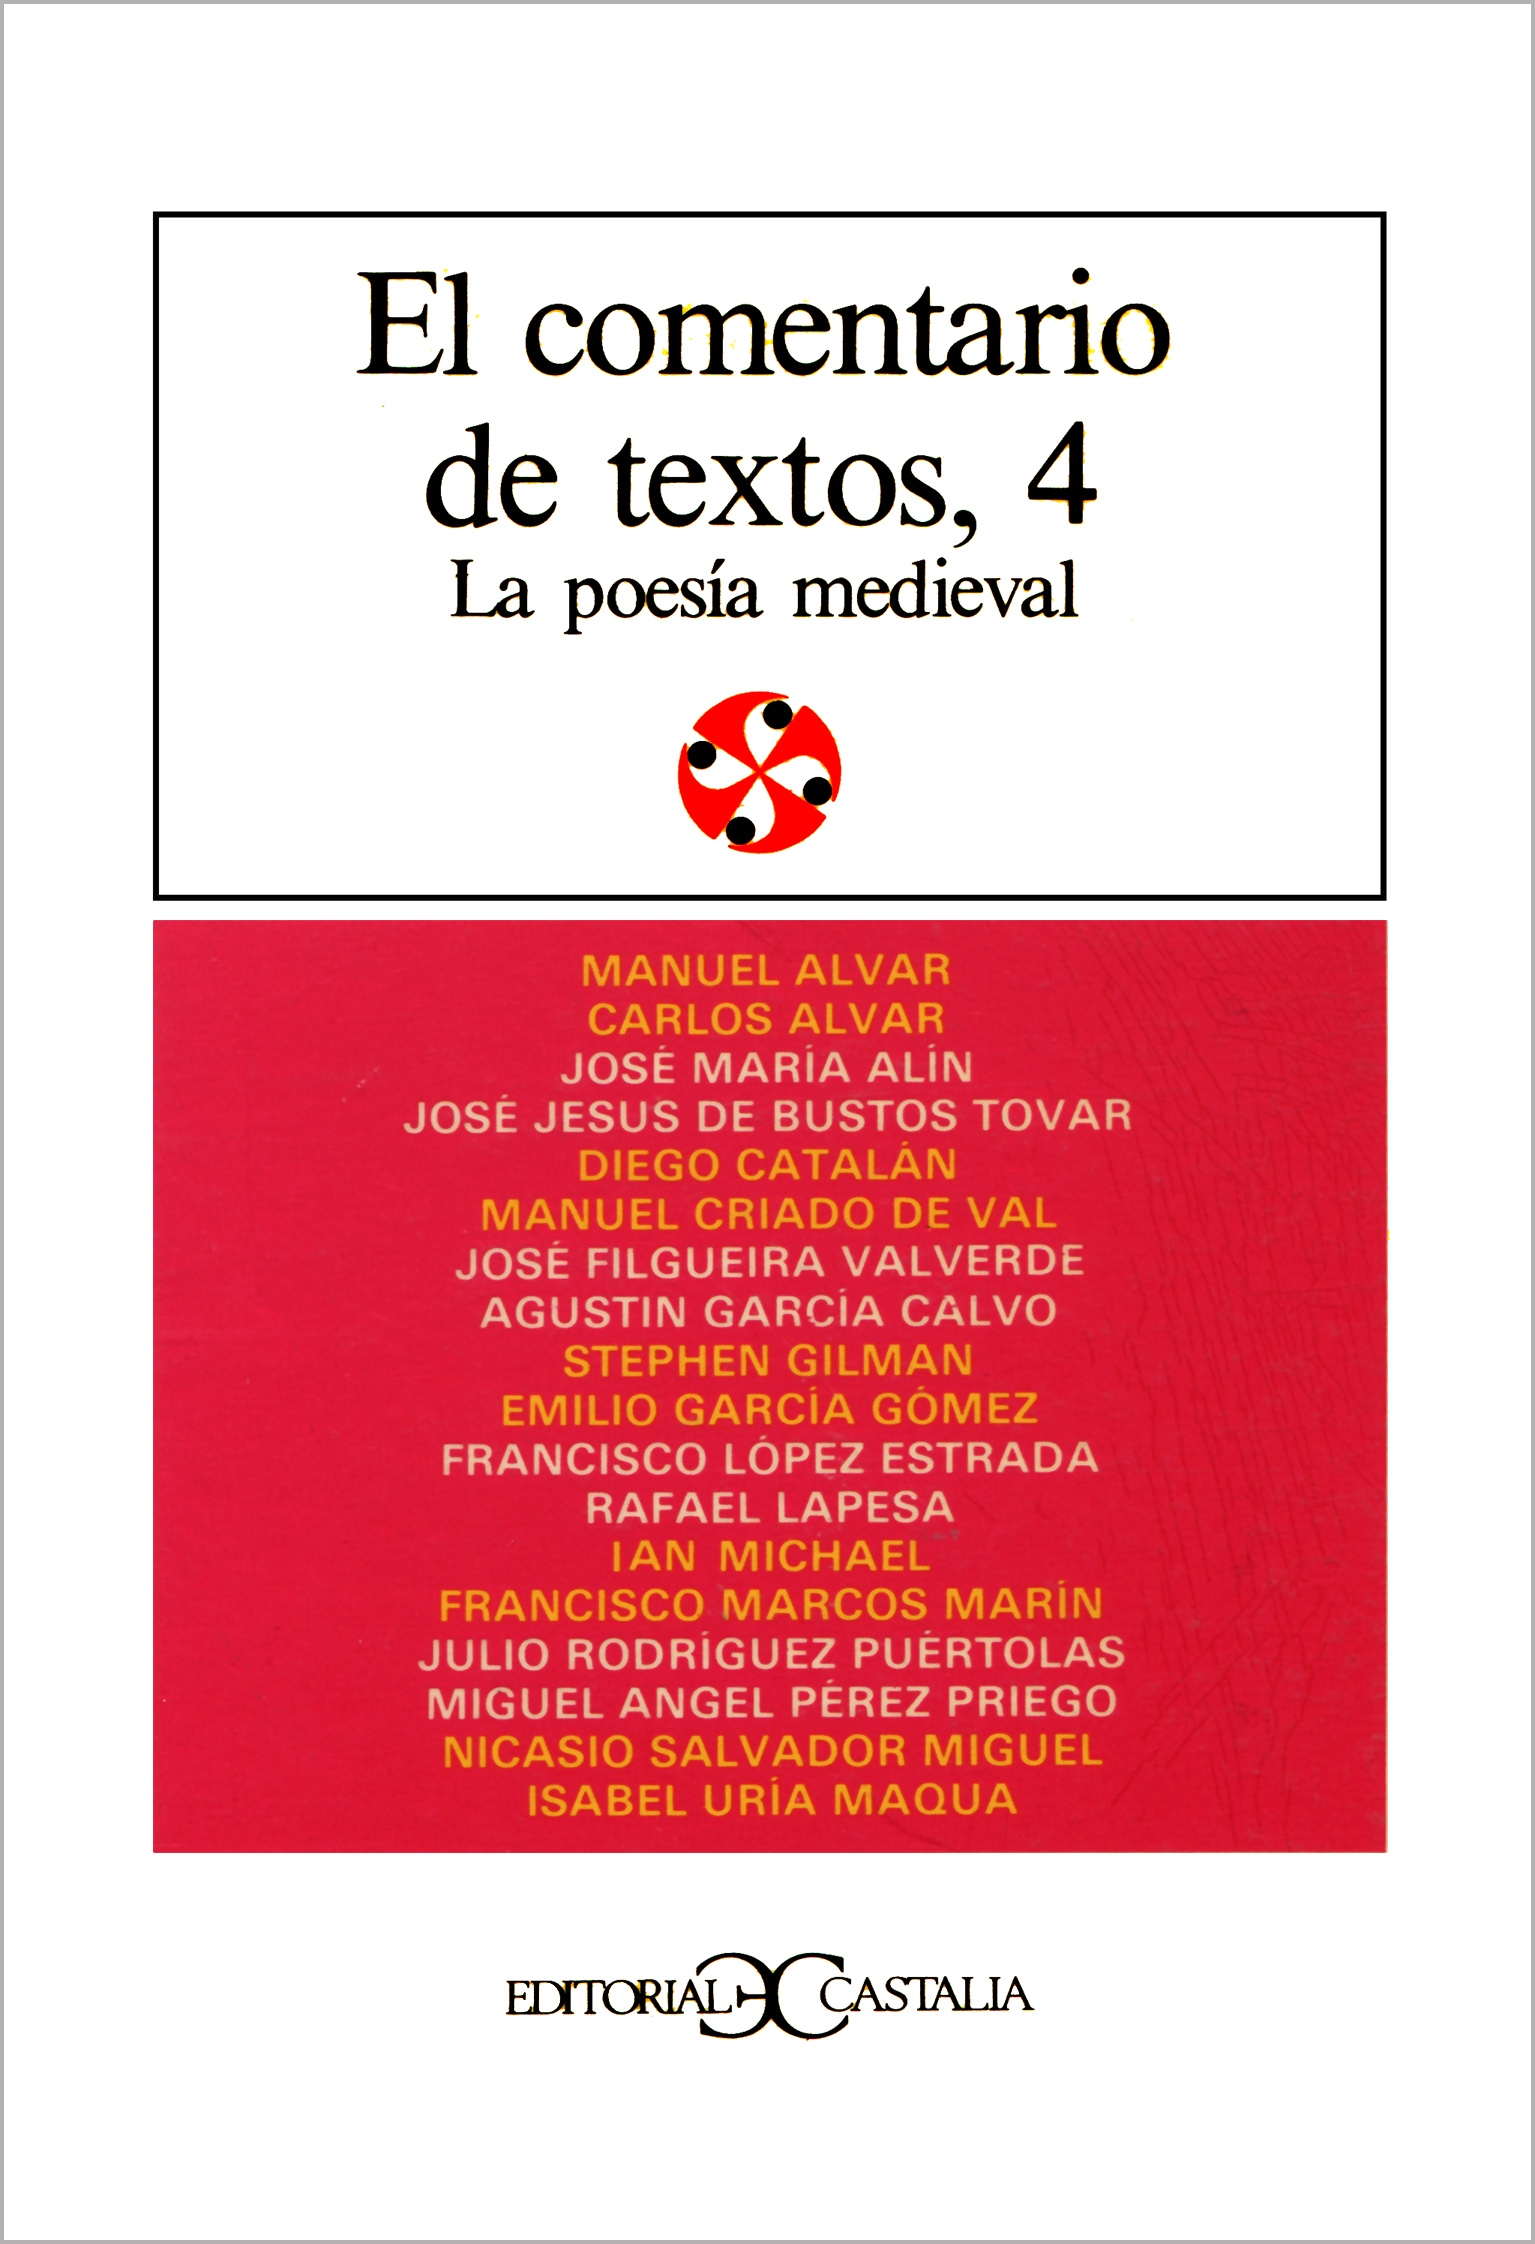 Antología comentada de la Literatura española. Siglo XVI